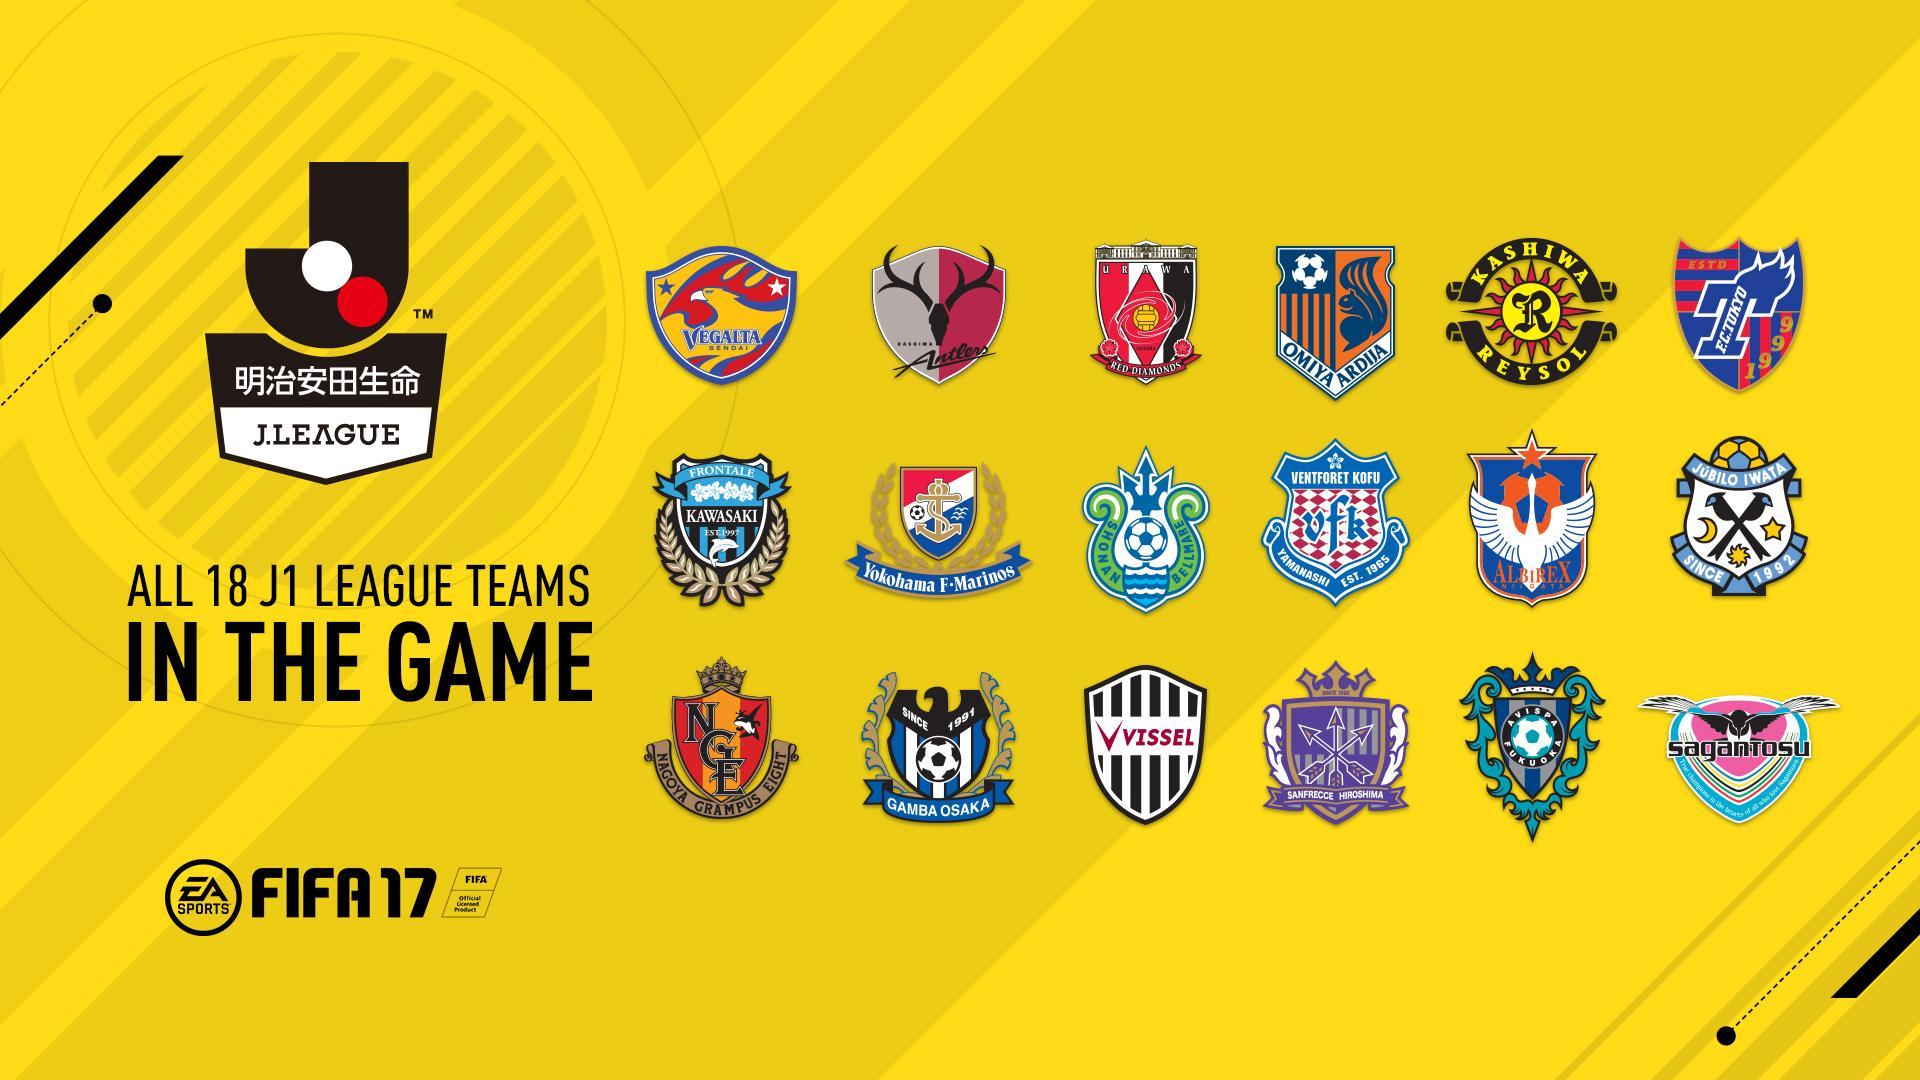 FIFA 17 Añade Fantasía Con La Licencia De La J League